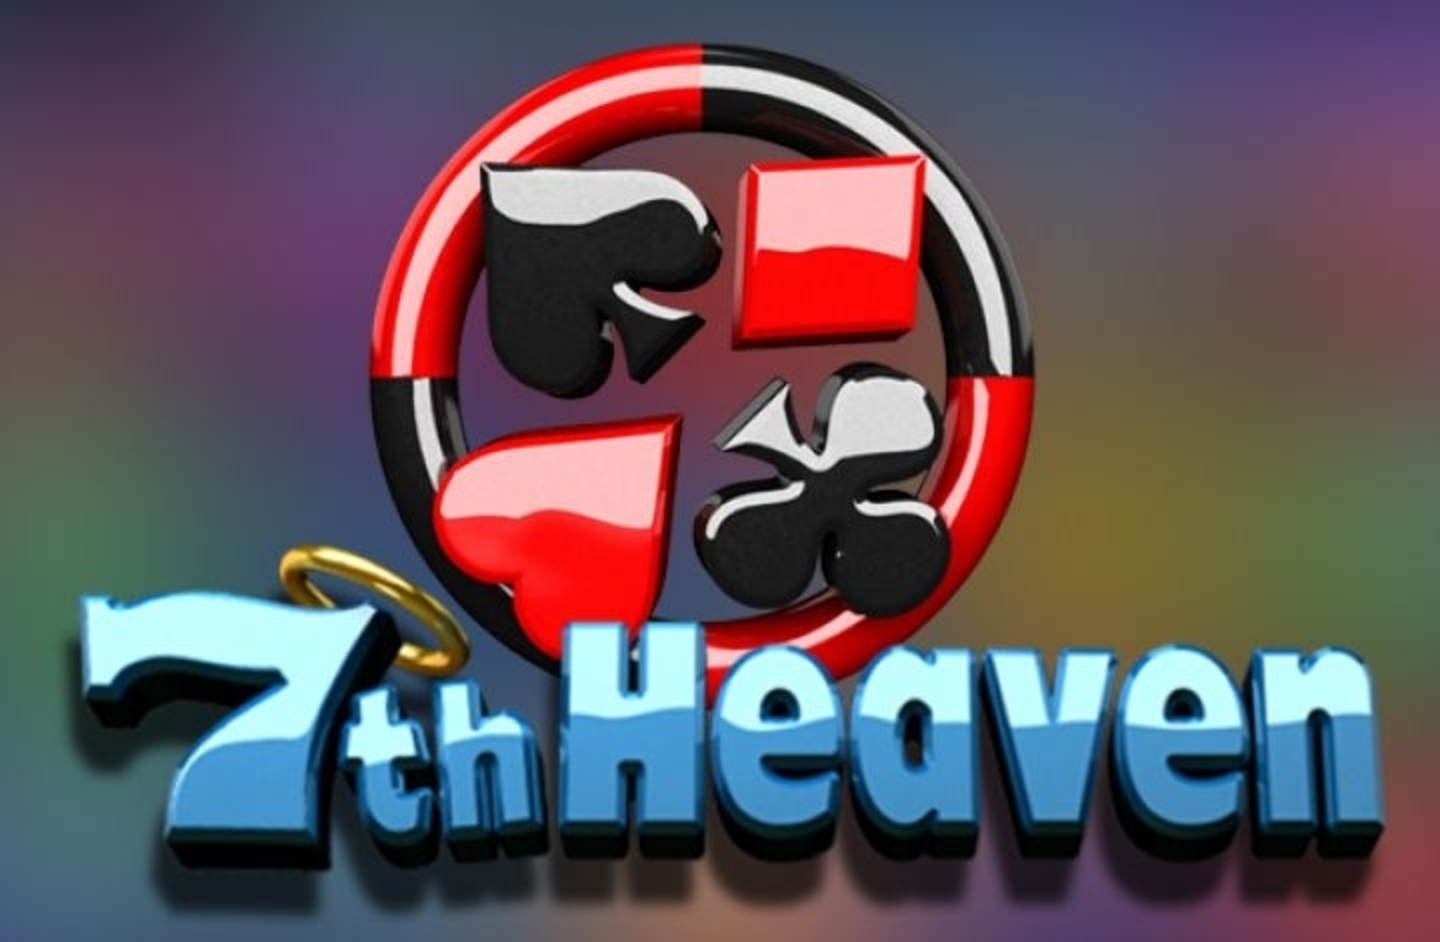 7th Heaven demo